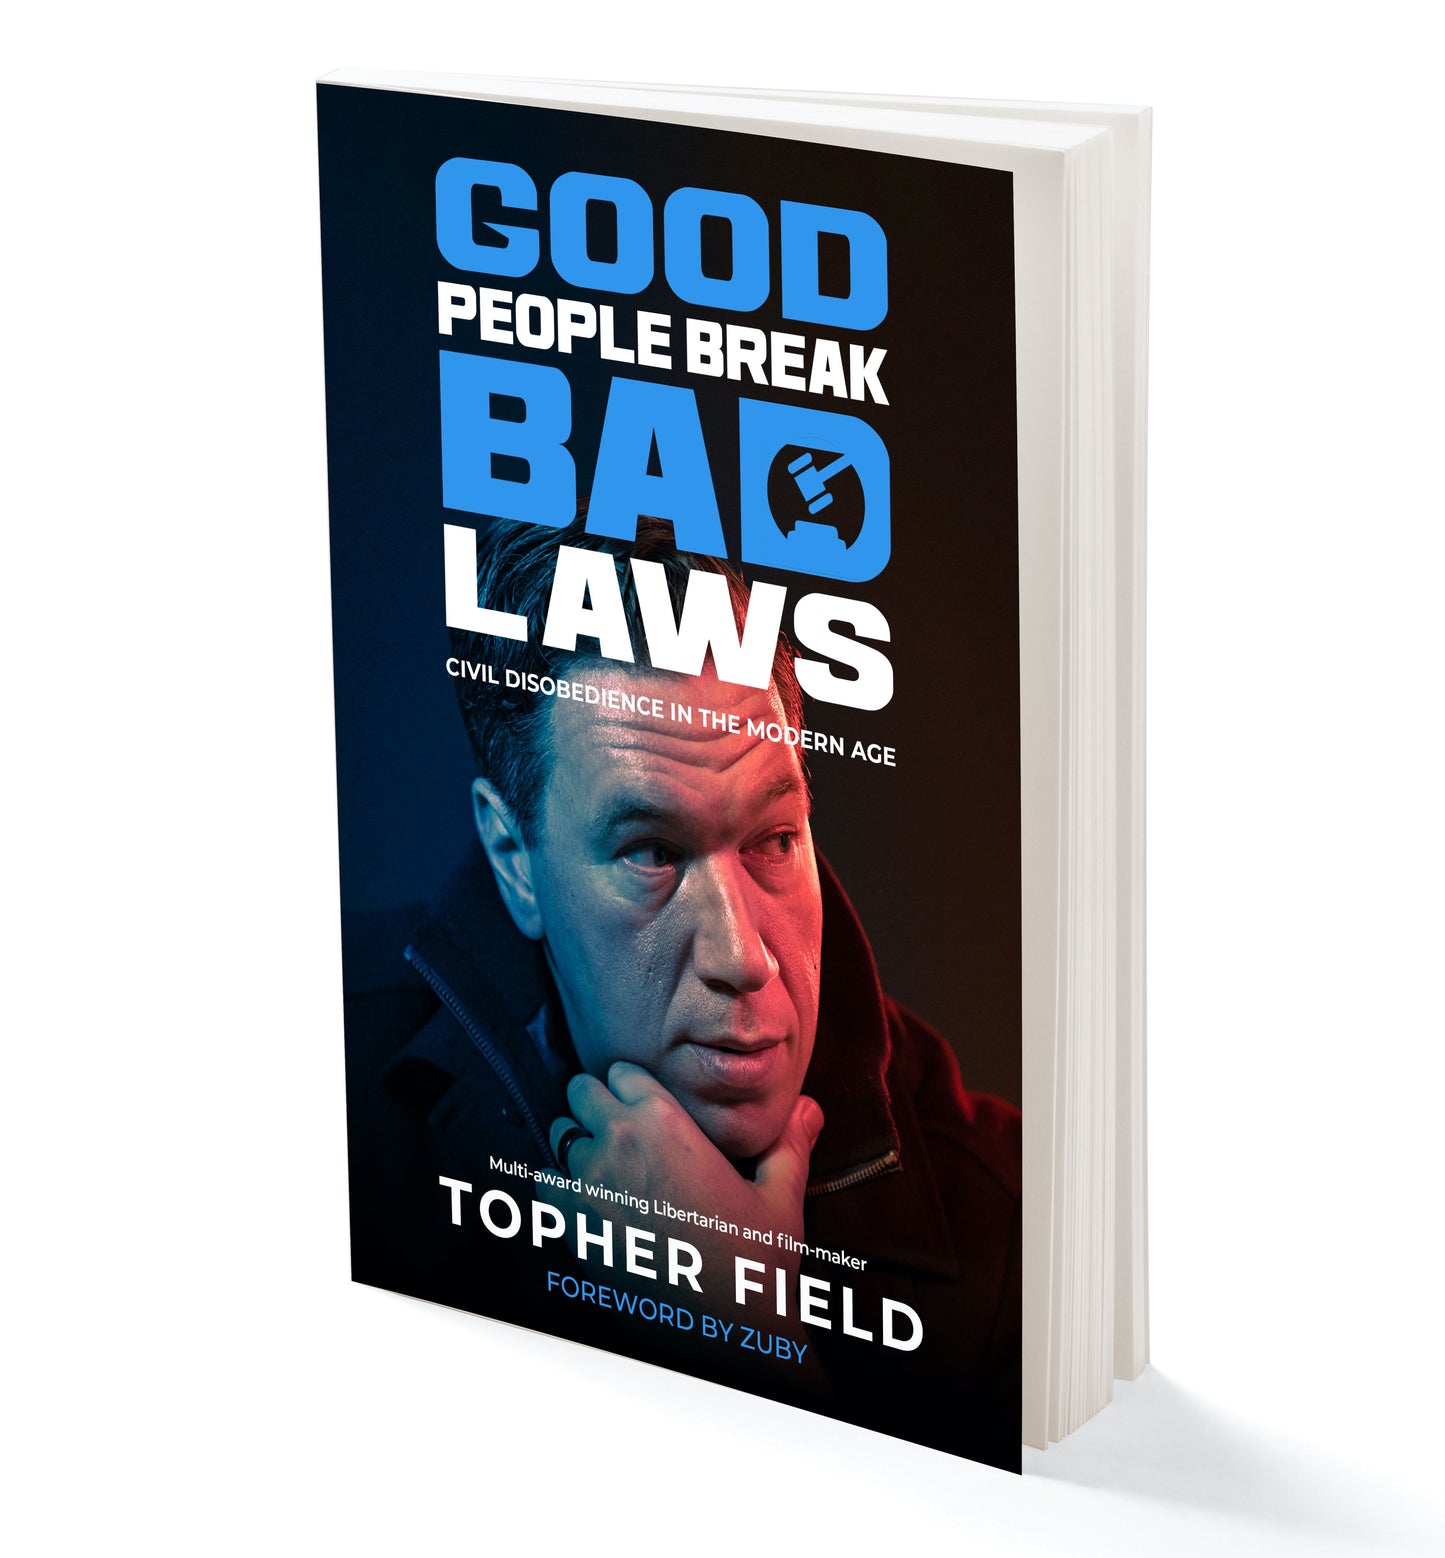 Good People Break Bad Laws